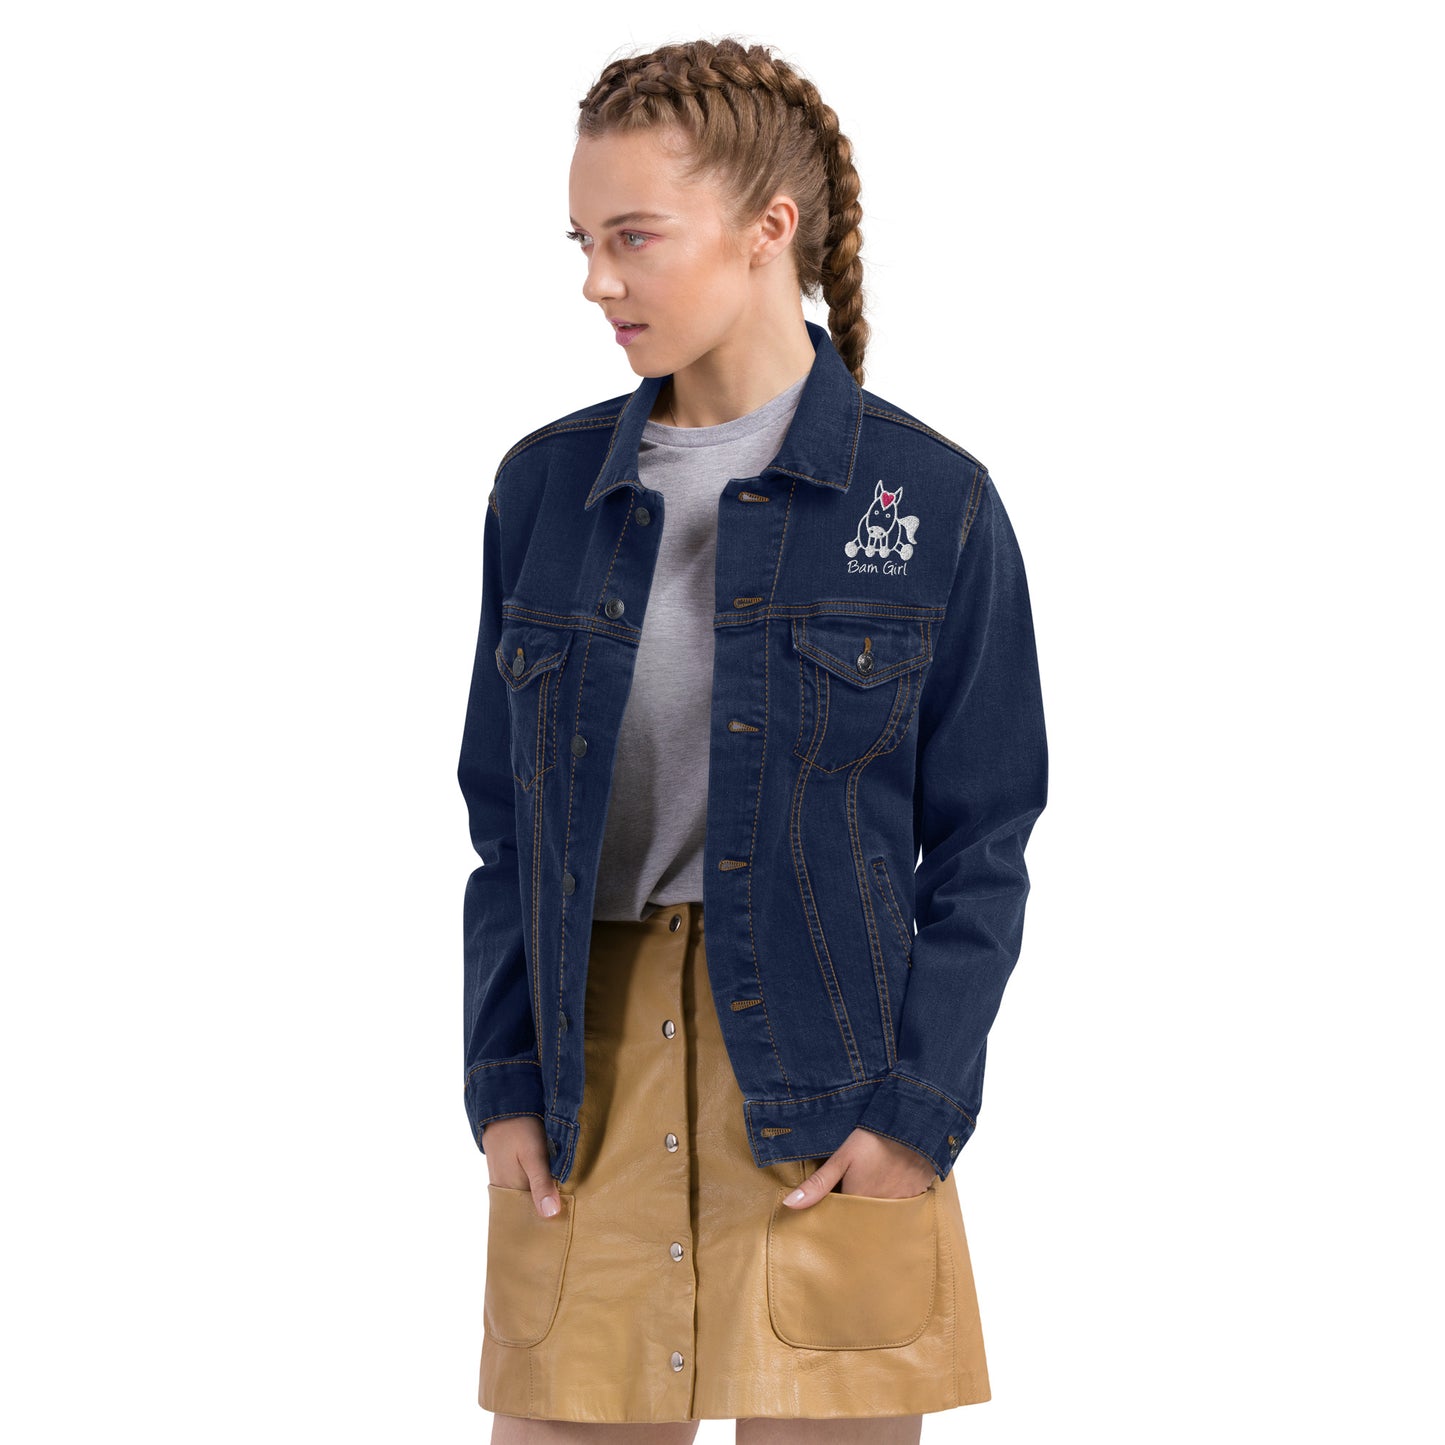 Barn Girl denim jacket